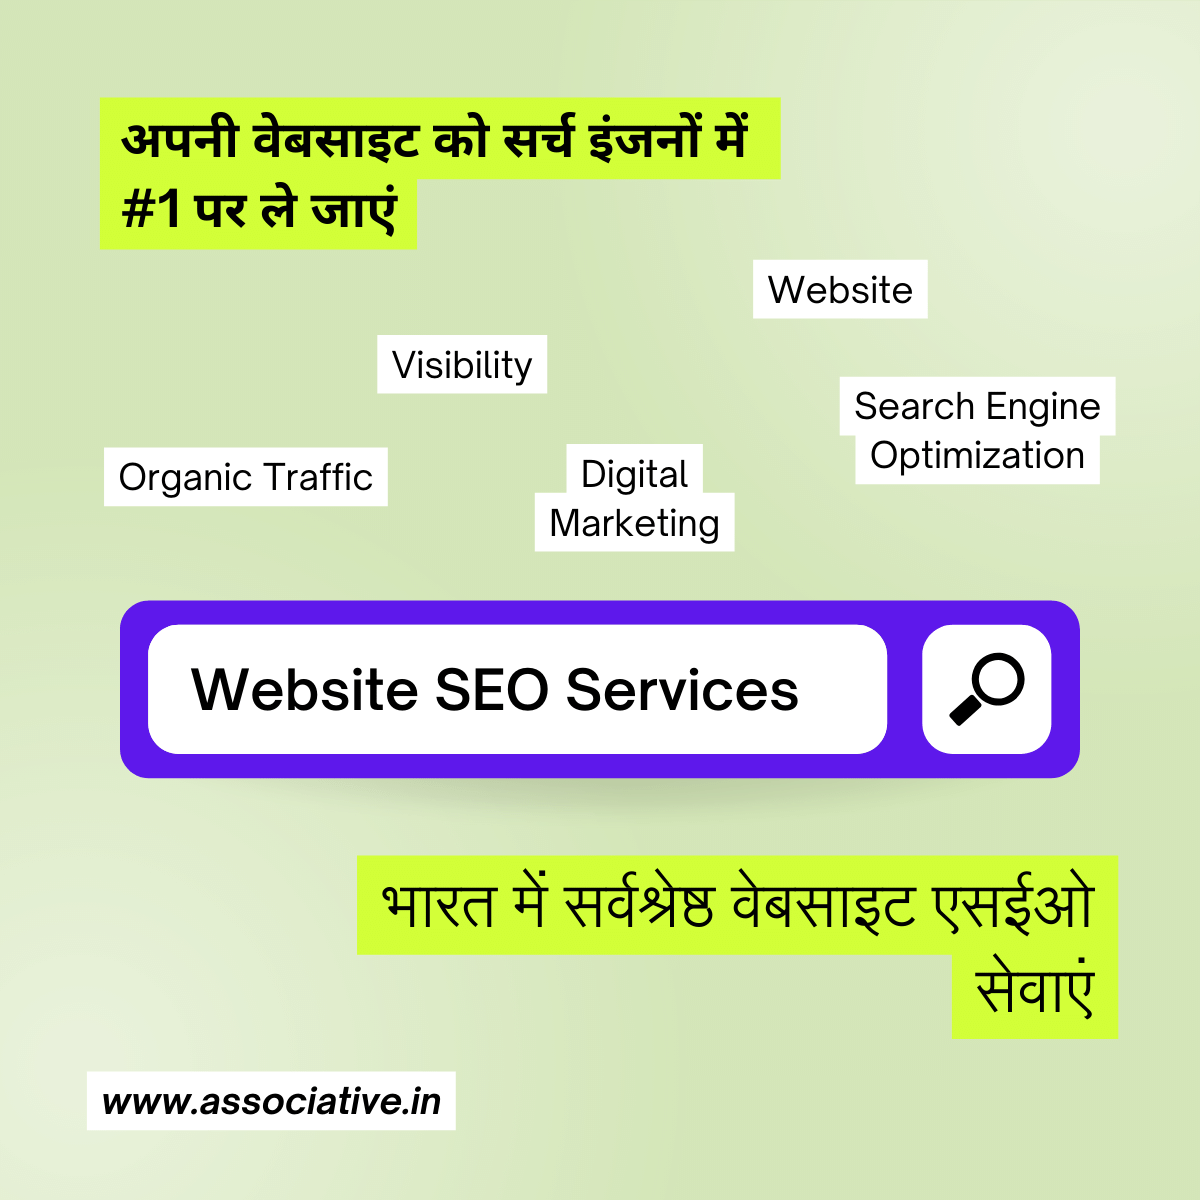 Website SEO Services अपनी वेबसाइट को सर्च इंजनों में #1 पर ले जाएं: भारत में सर्वश्रेष्ठ वेबसाइट एसईओ सेवाएं